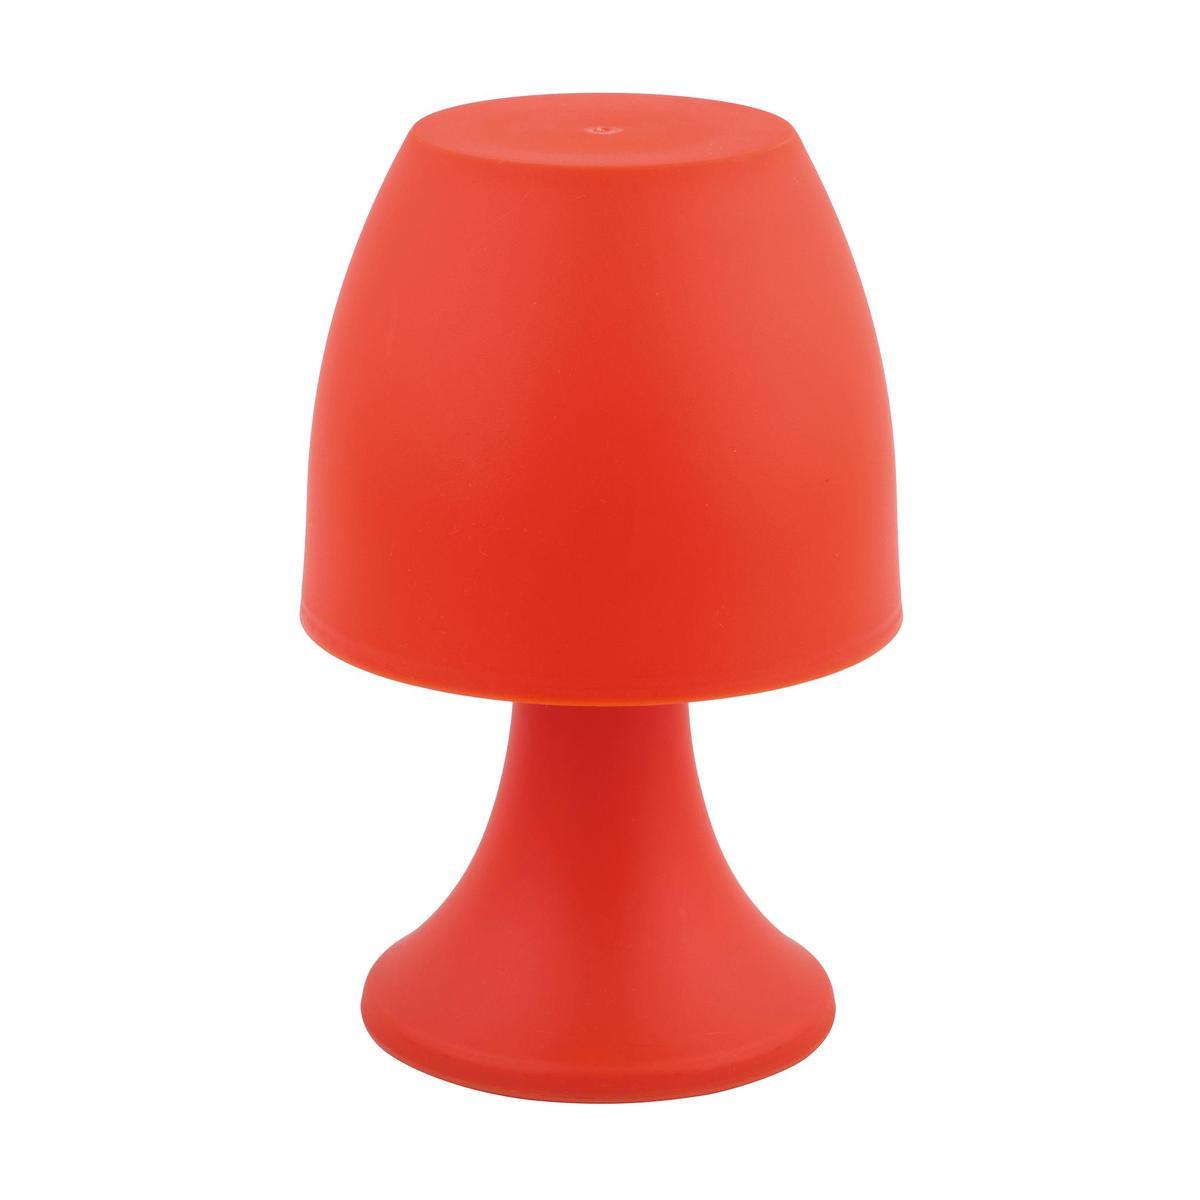 Lampe de Table Champignon Orange, Lampe Champignon LED, Lampe de